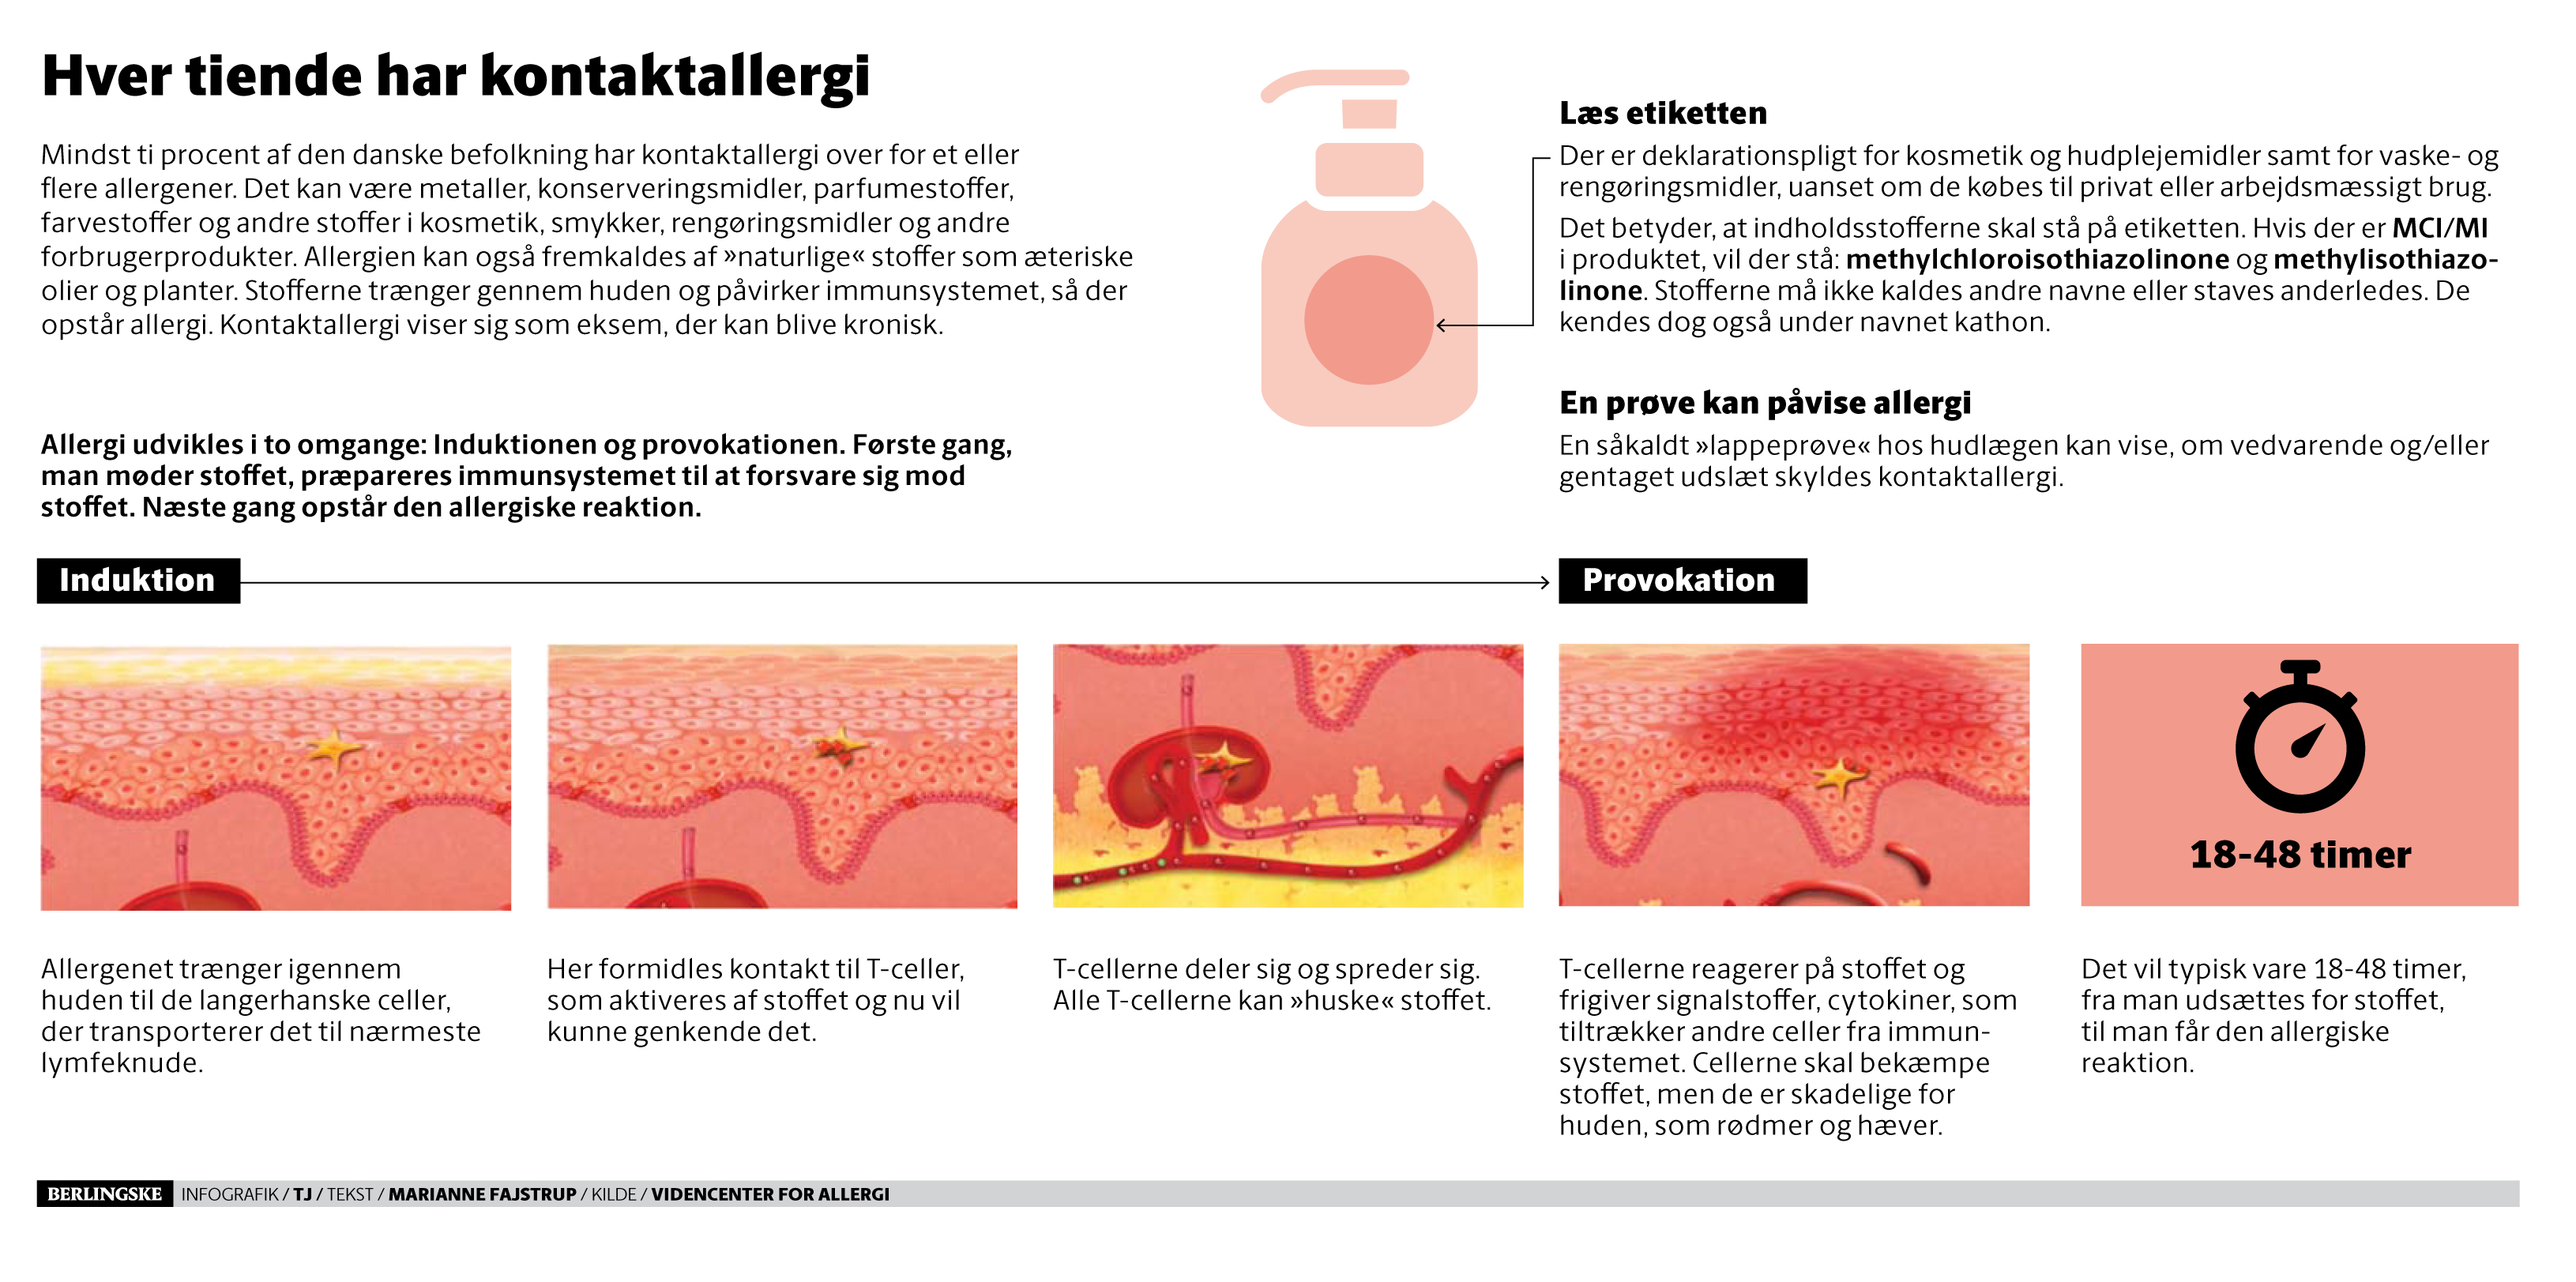 Allergibombe: Flere flere får allergi af kosmetik | BT Sundhed - www.bt.dk